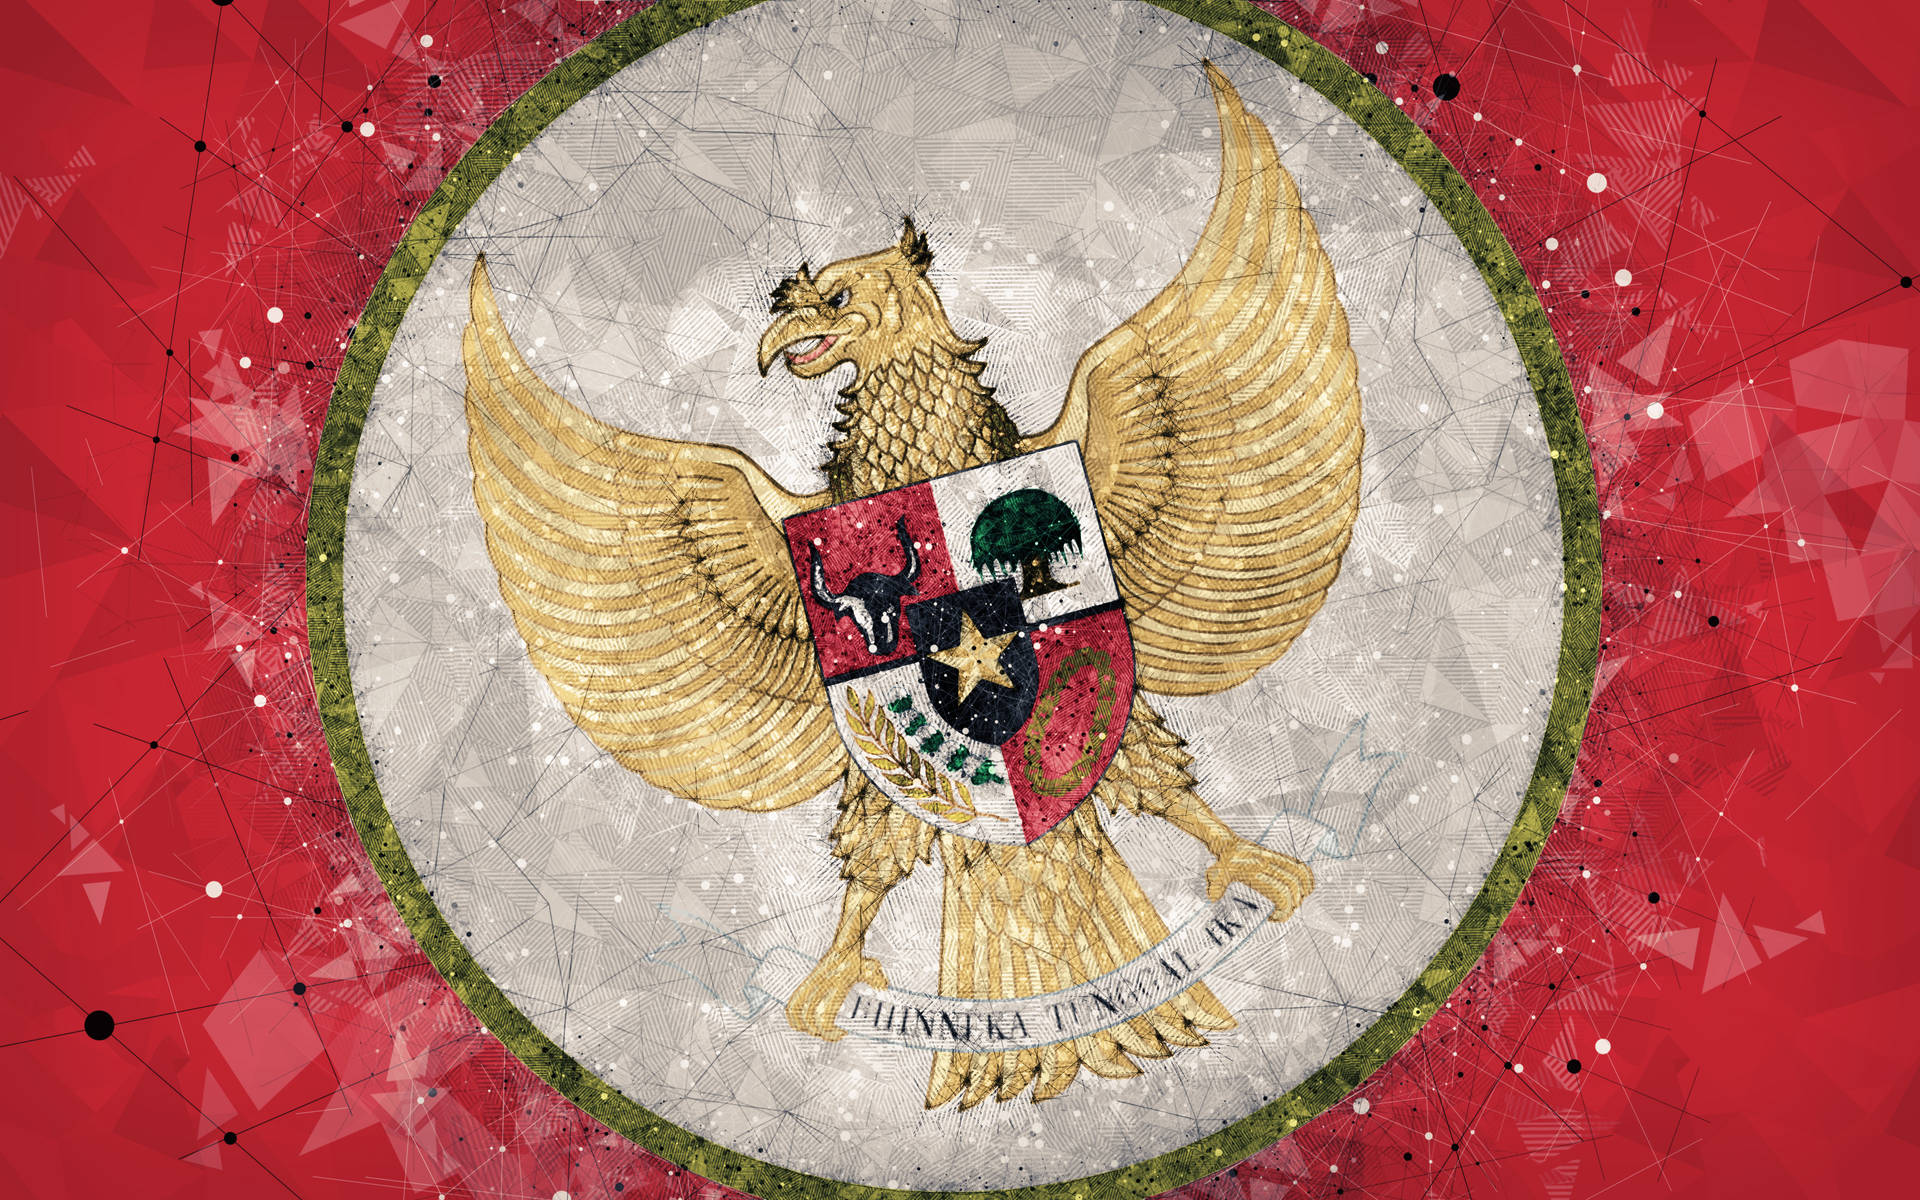 Caption: Indonesian National Emblem - Garuda Pancasila Wallpaper